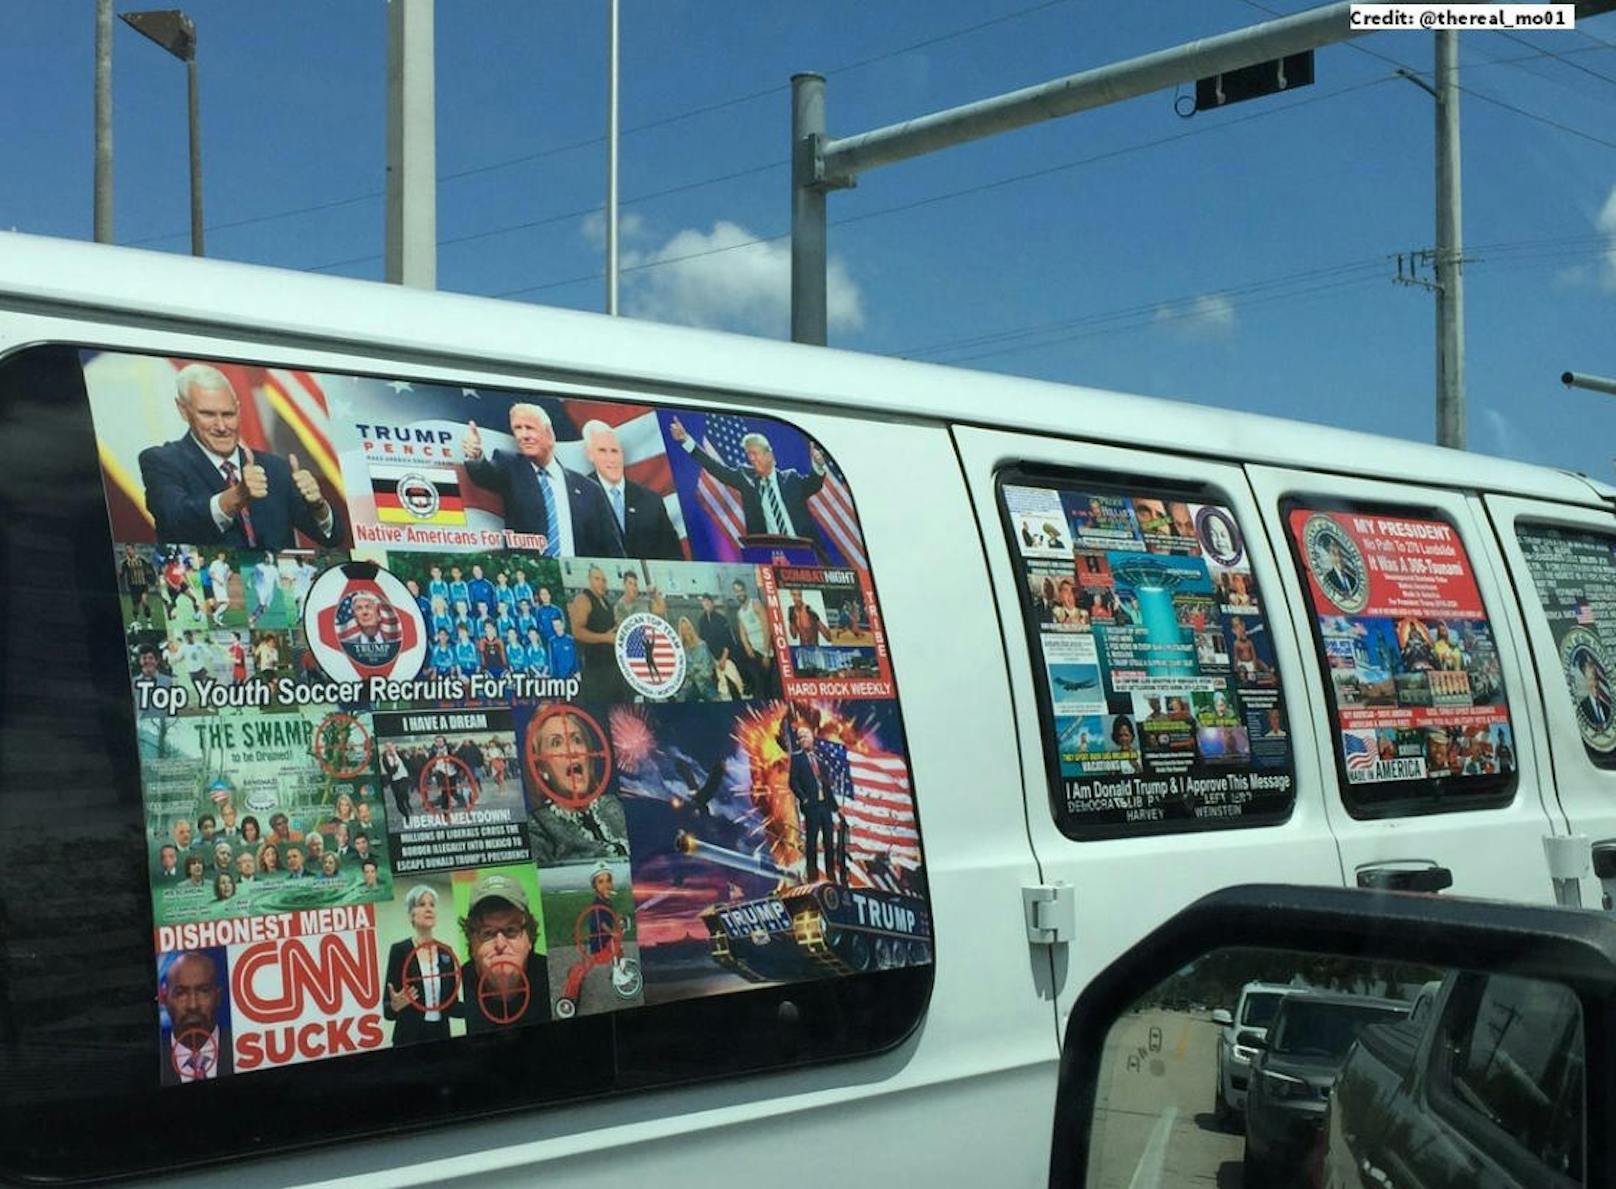 Der Van des mutmaßlichen Paket-Bombers ist vollgeklebt mit Pro-Trump Aufklebern.